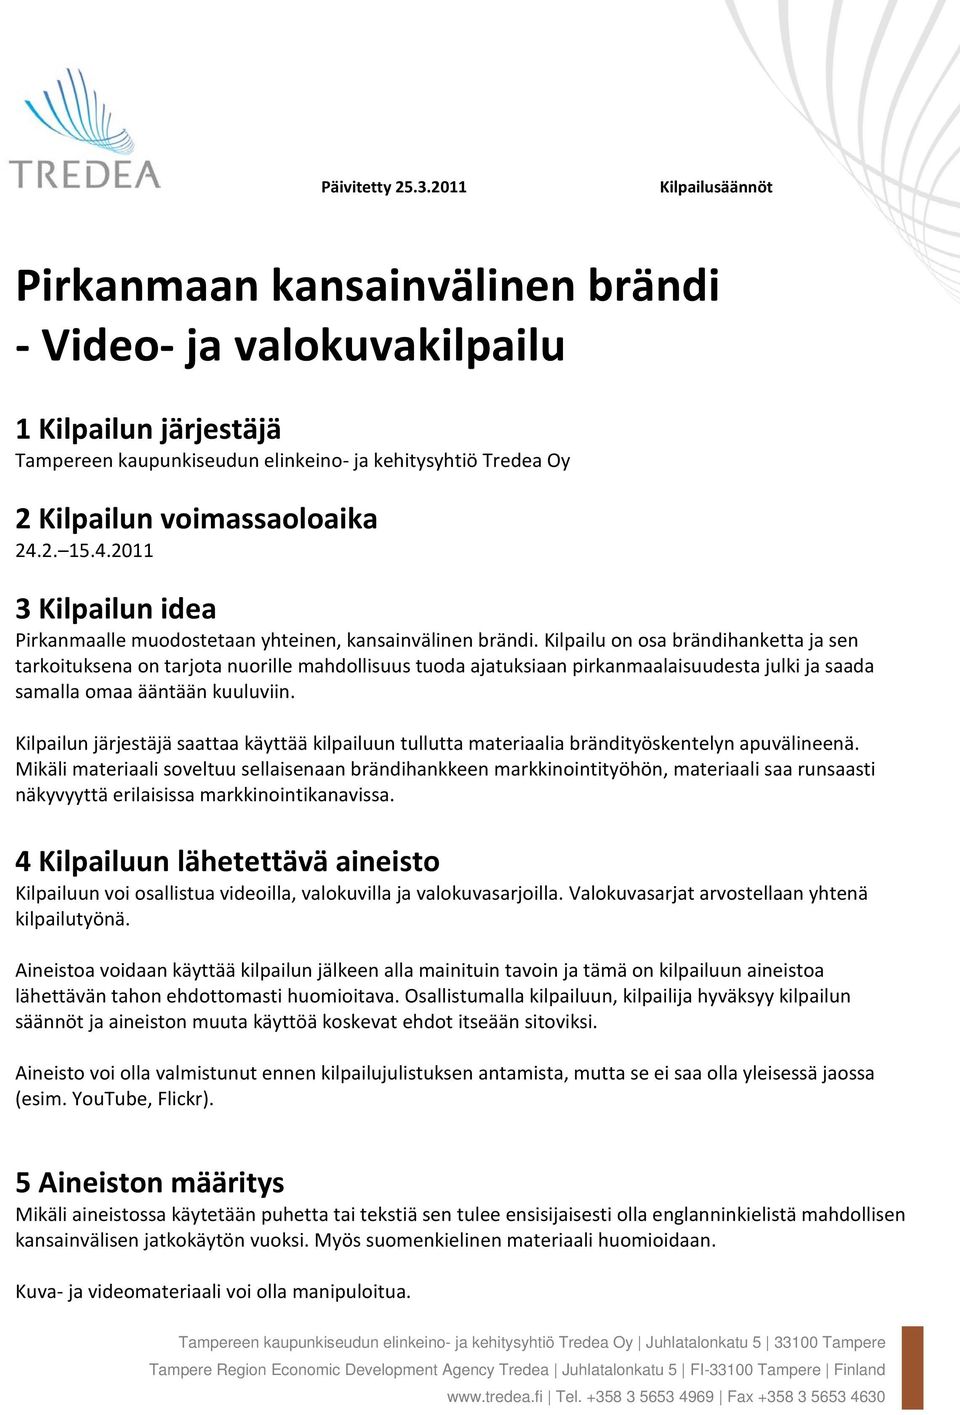 2. 15.4.2011 3 Kilpailun idea Pirkanmaalle muodostetaan yhteinen, kansainvälinen brändi.